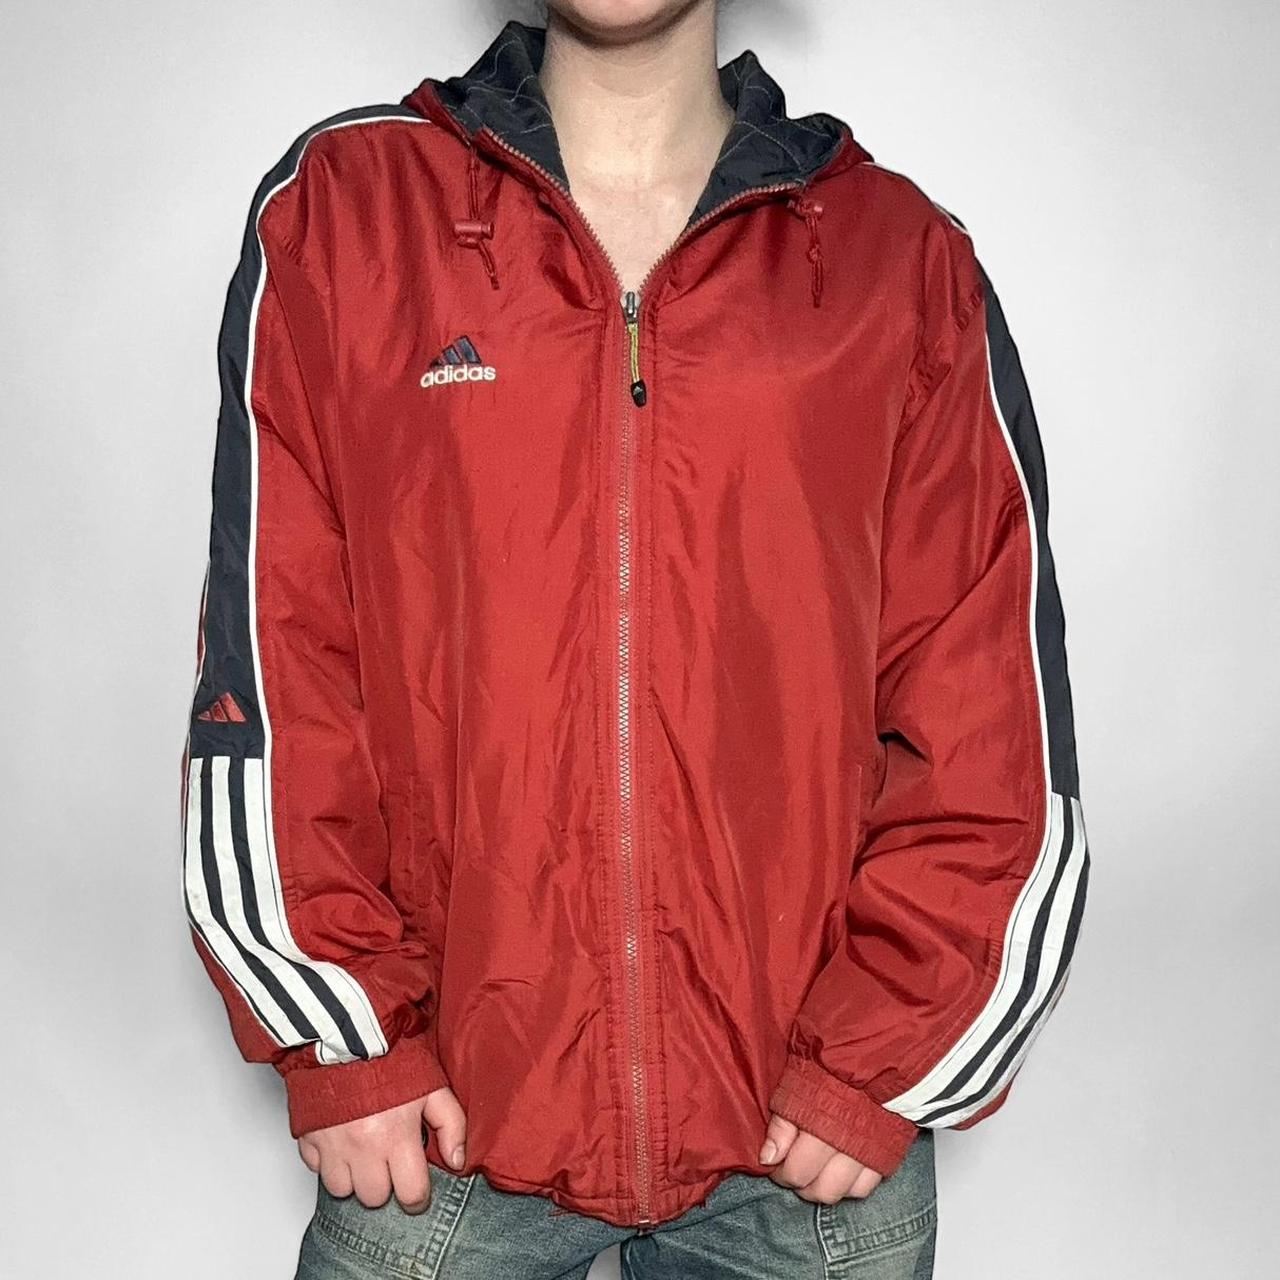 Vintage 90s Adidas red zip up streetwear windbreaker jacket